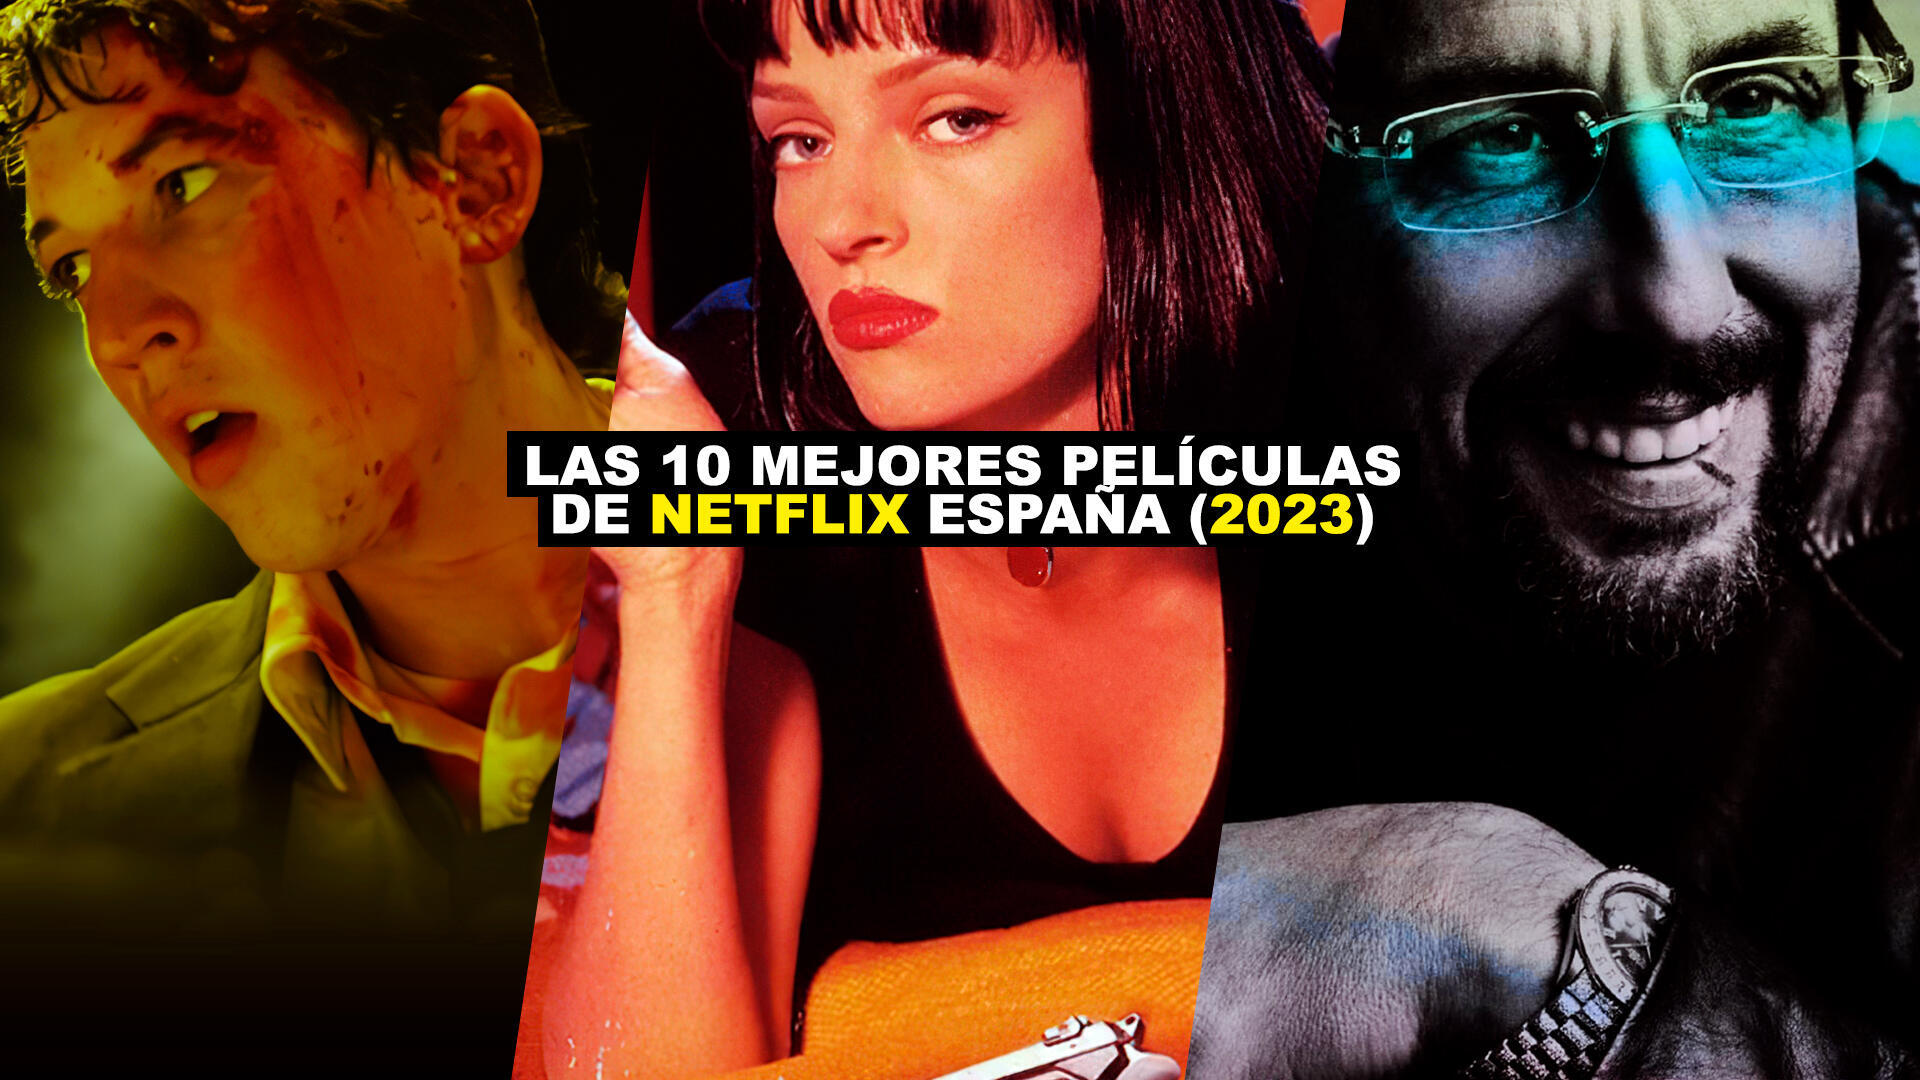 Las 10 MEJORES pelculas de Netflix Espaa (ACTUALIZADO 2023) - Recomendacin